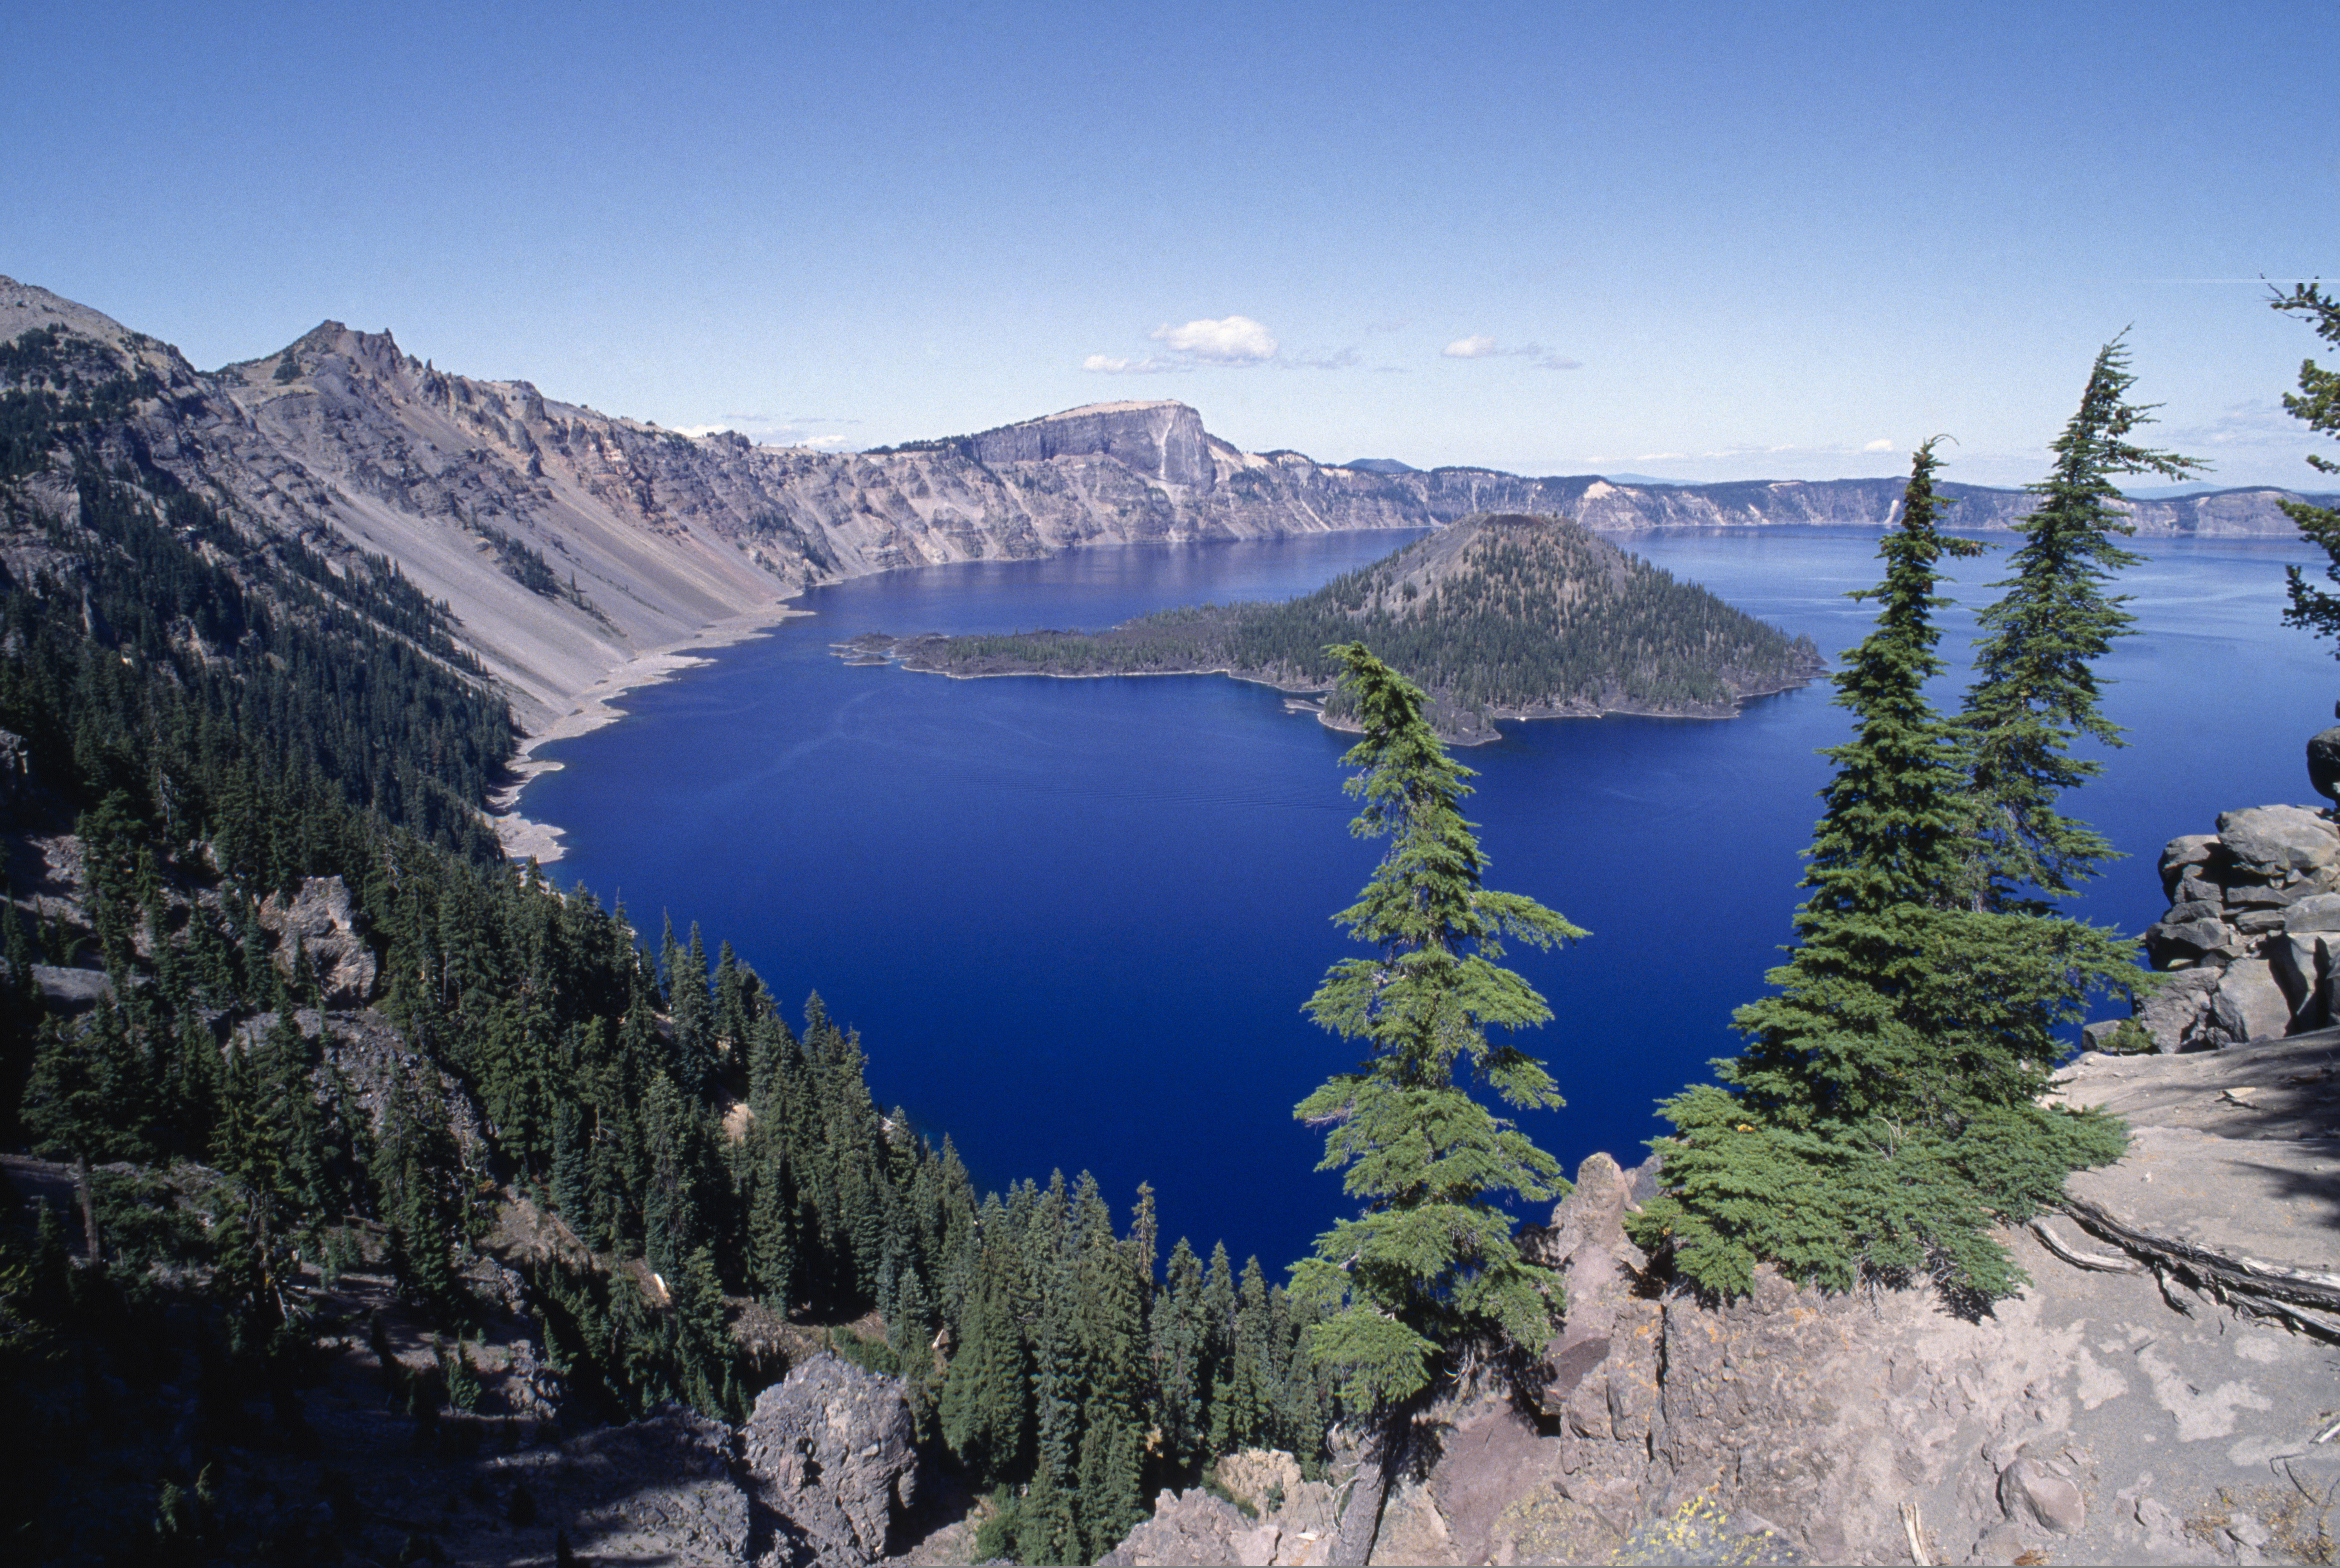 For Crater Lake: (photo: Eye Ubiquitous/Newscom)